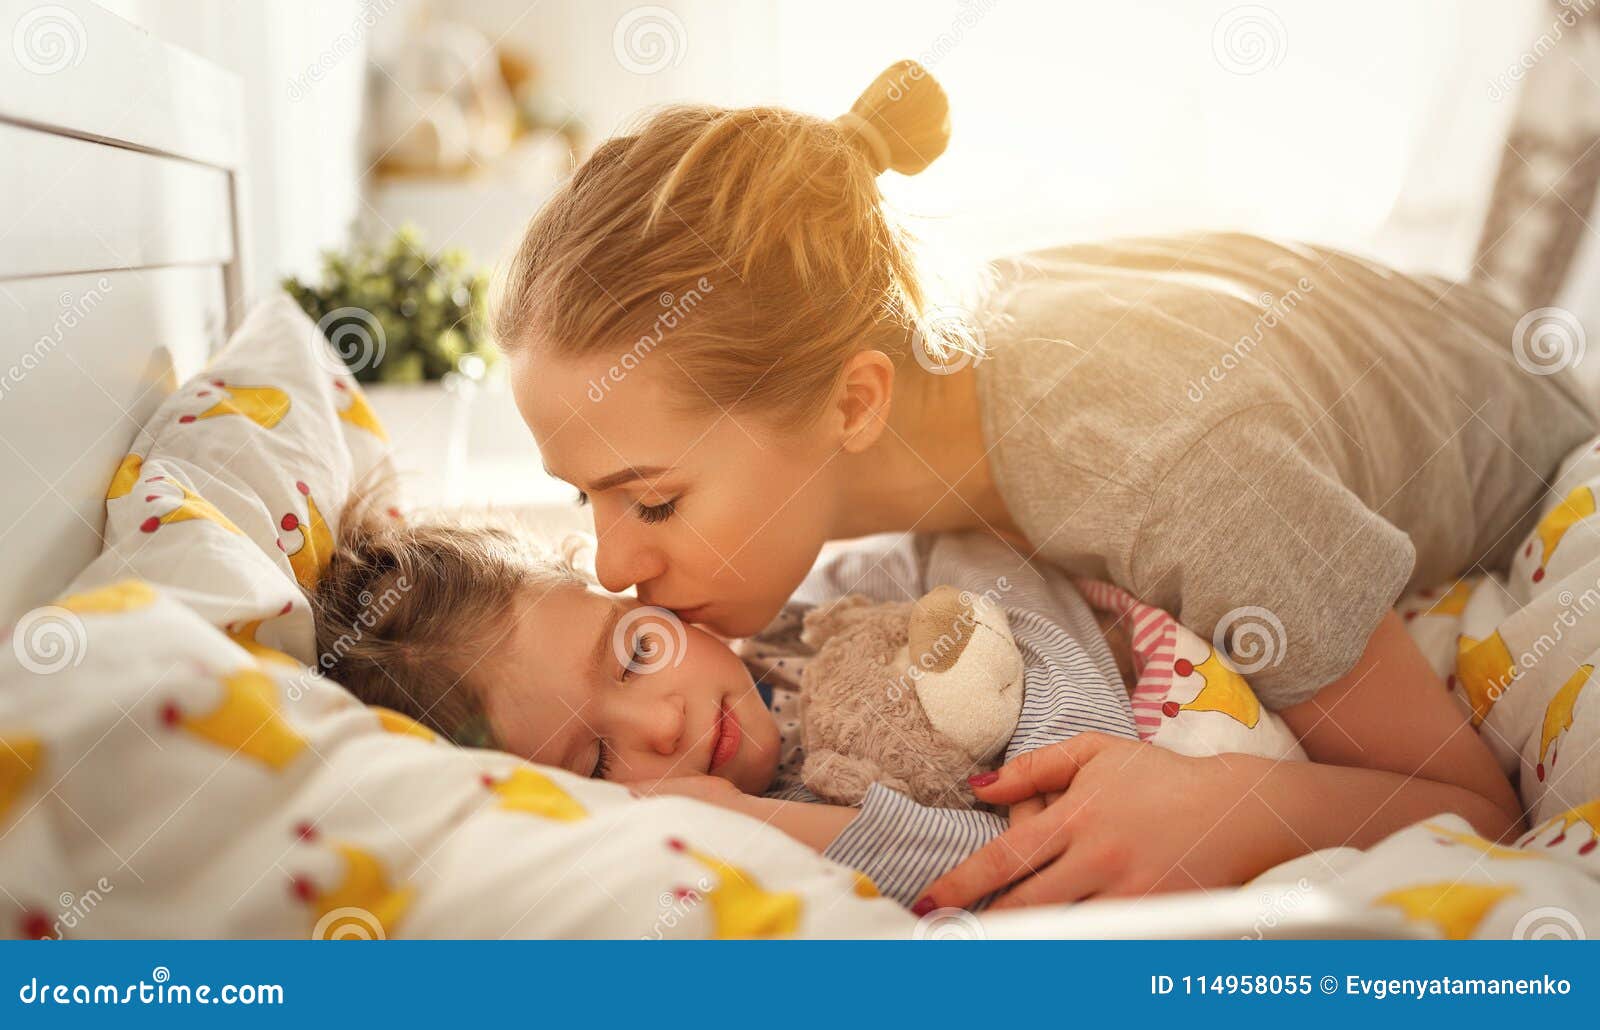 Увидел спящую дочку. Разбудить ребенка утром. Пробуждение младенца. Мама с ребенком перед сном. Мама будит утром ребенка.